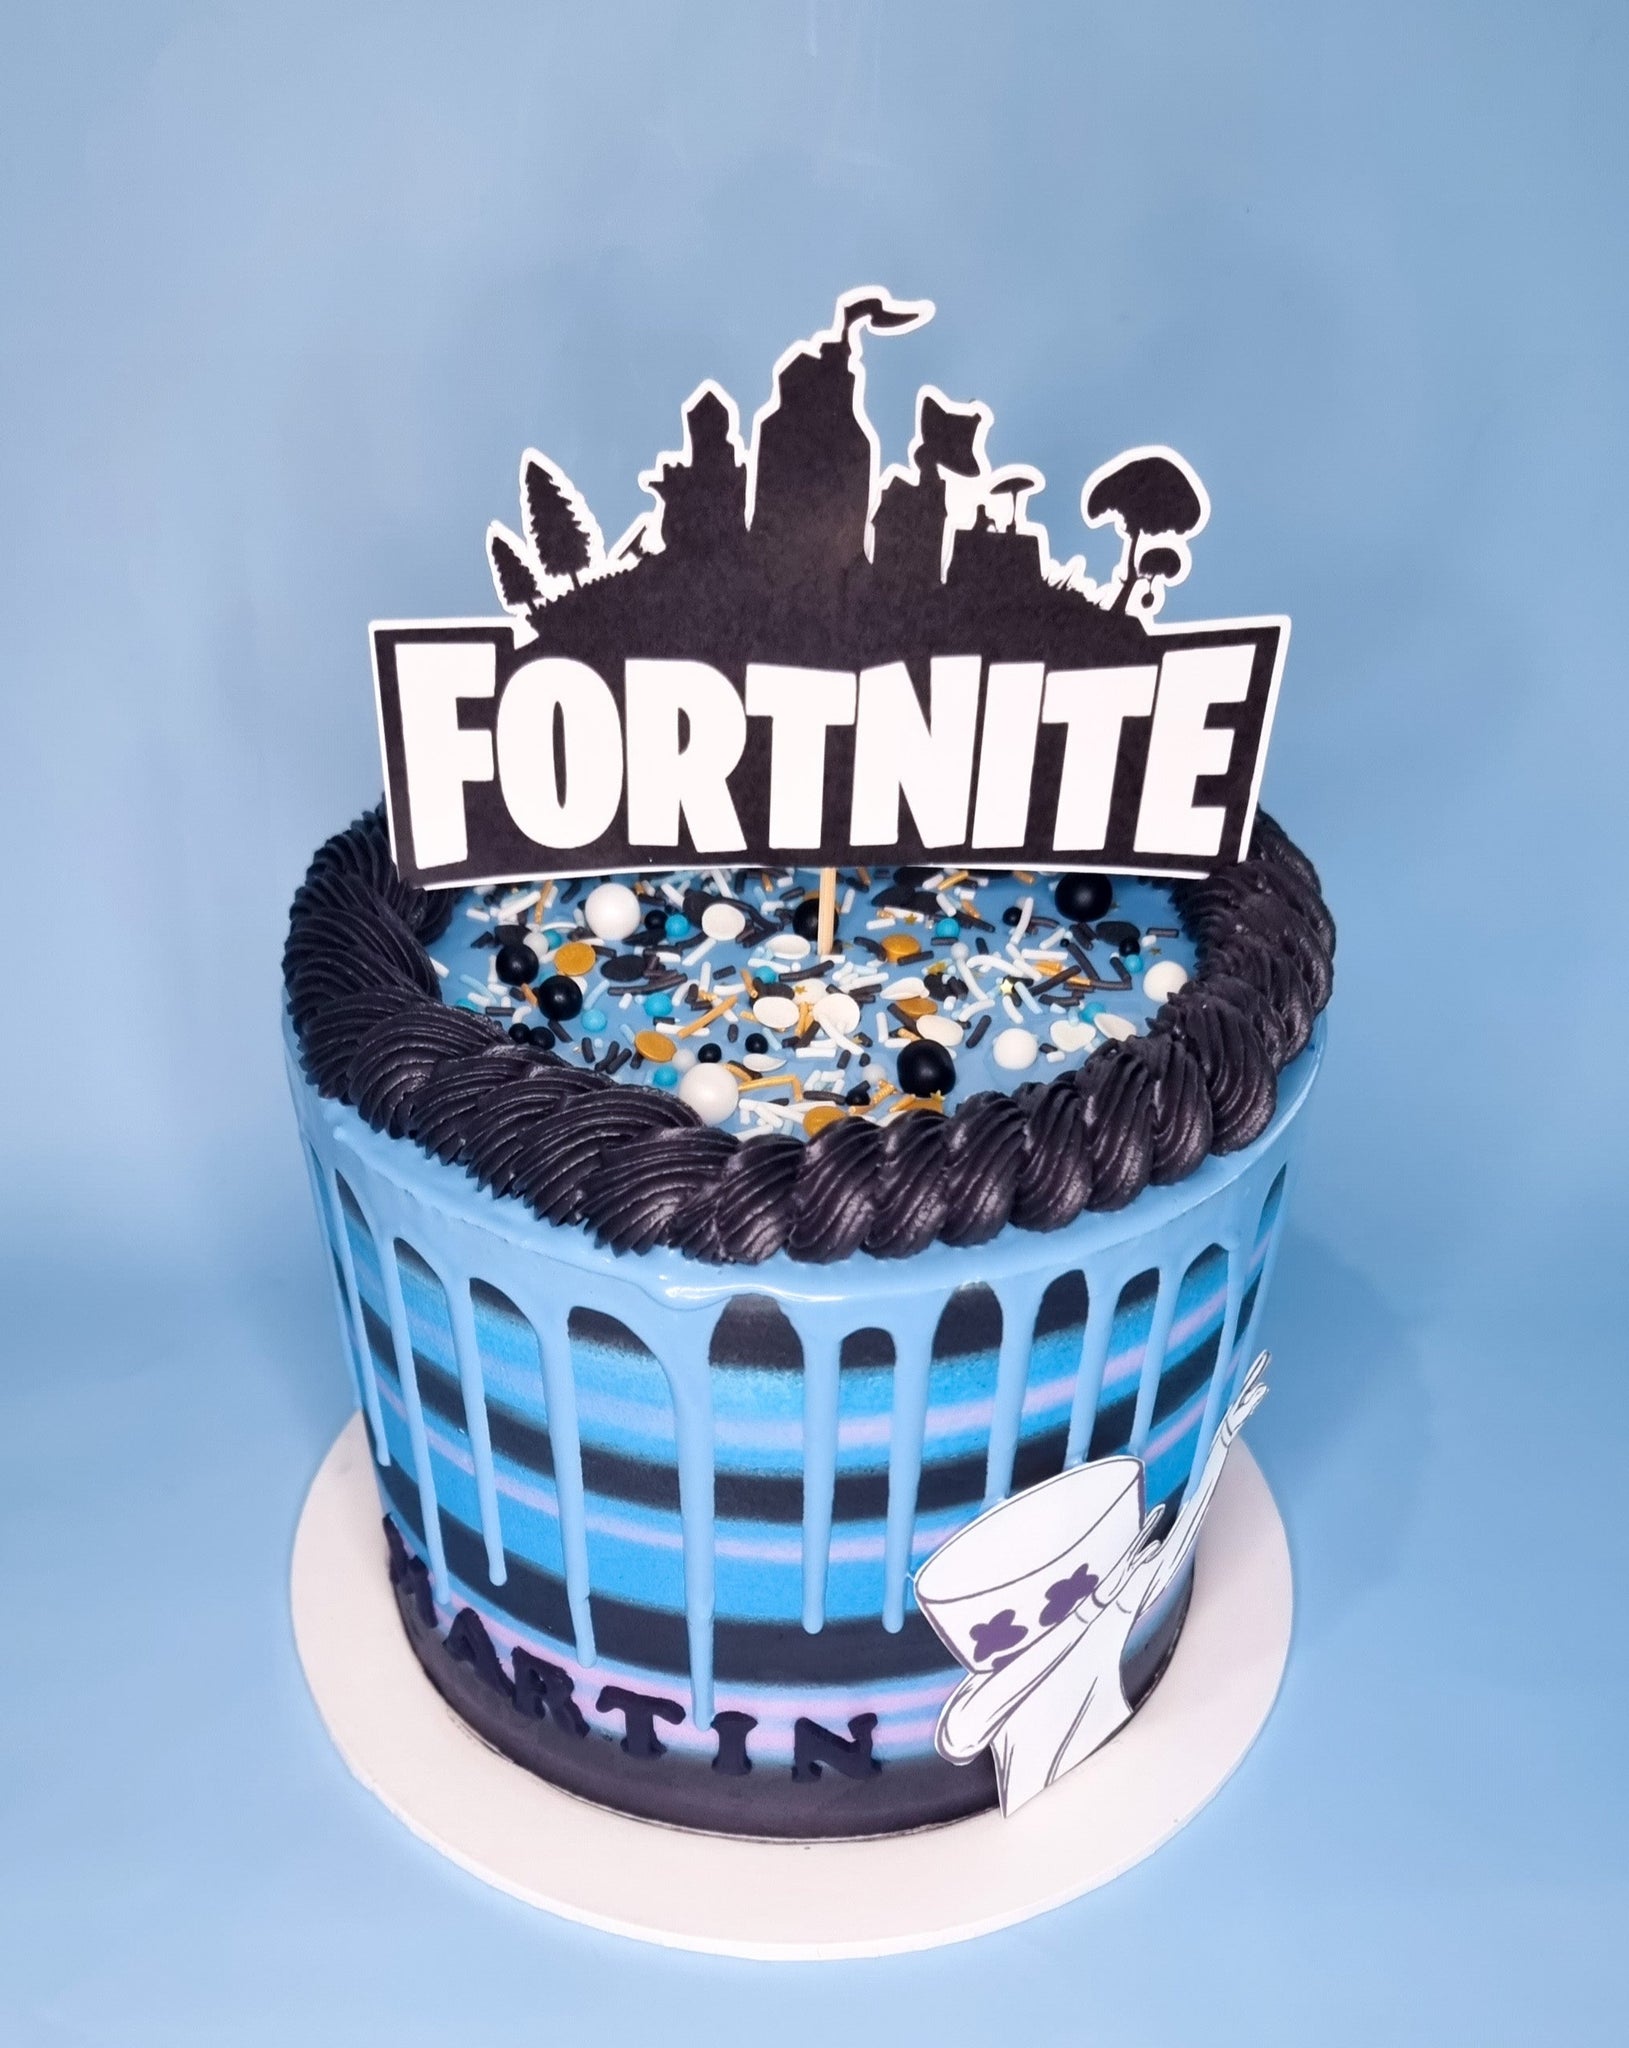 Fortnite Inspired Cake